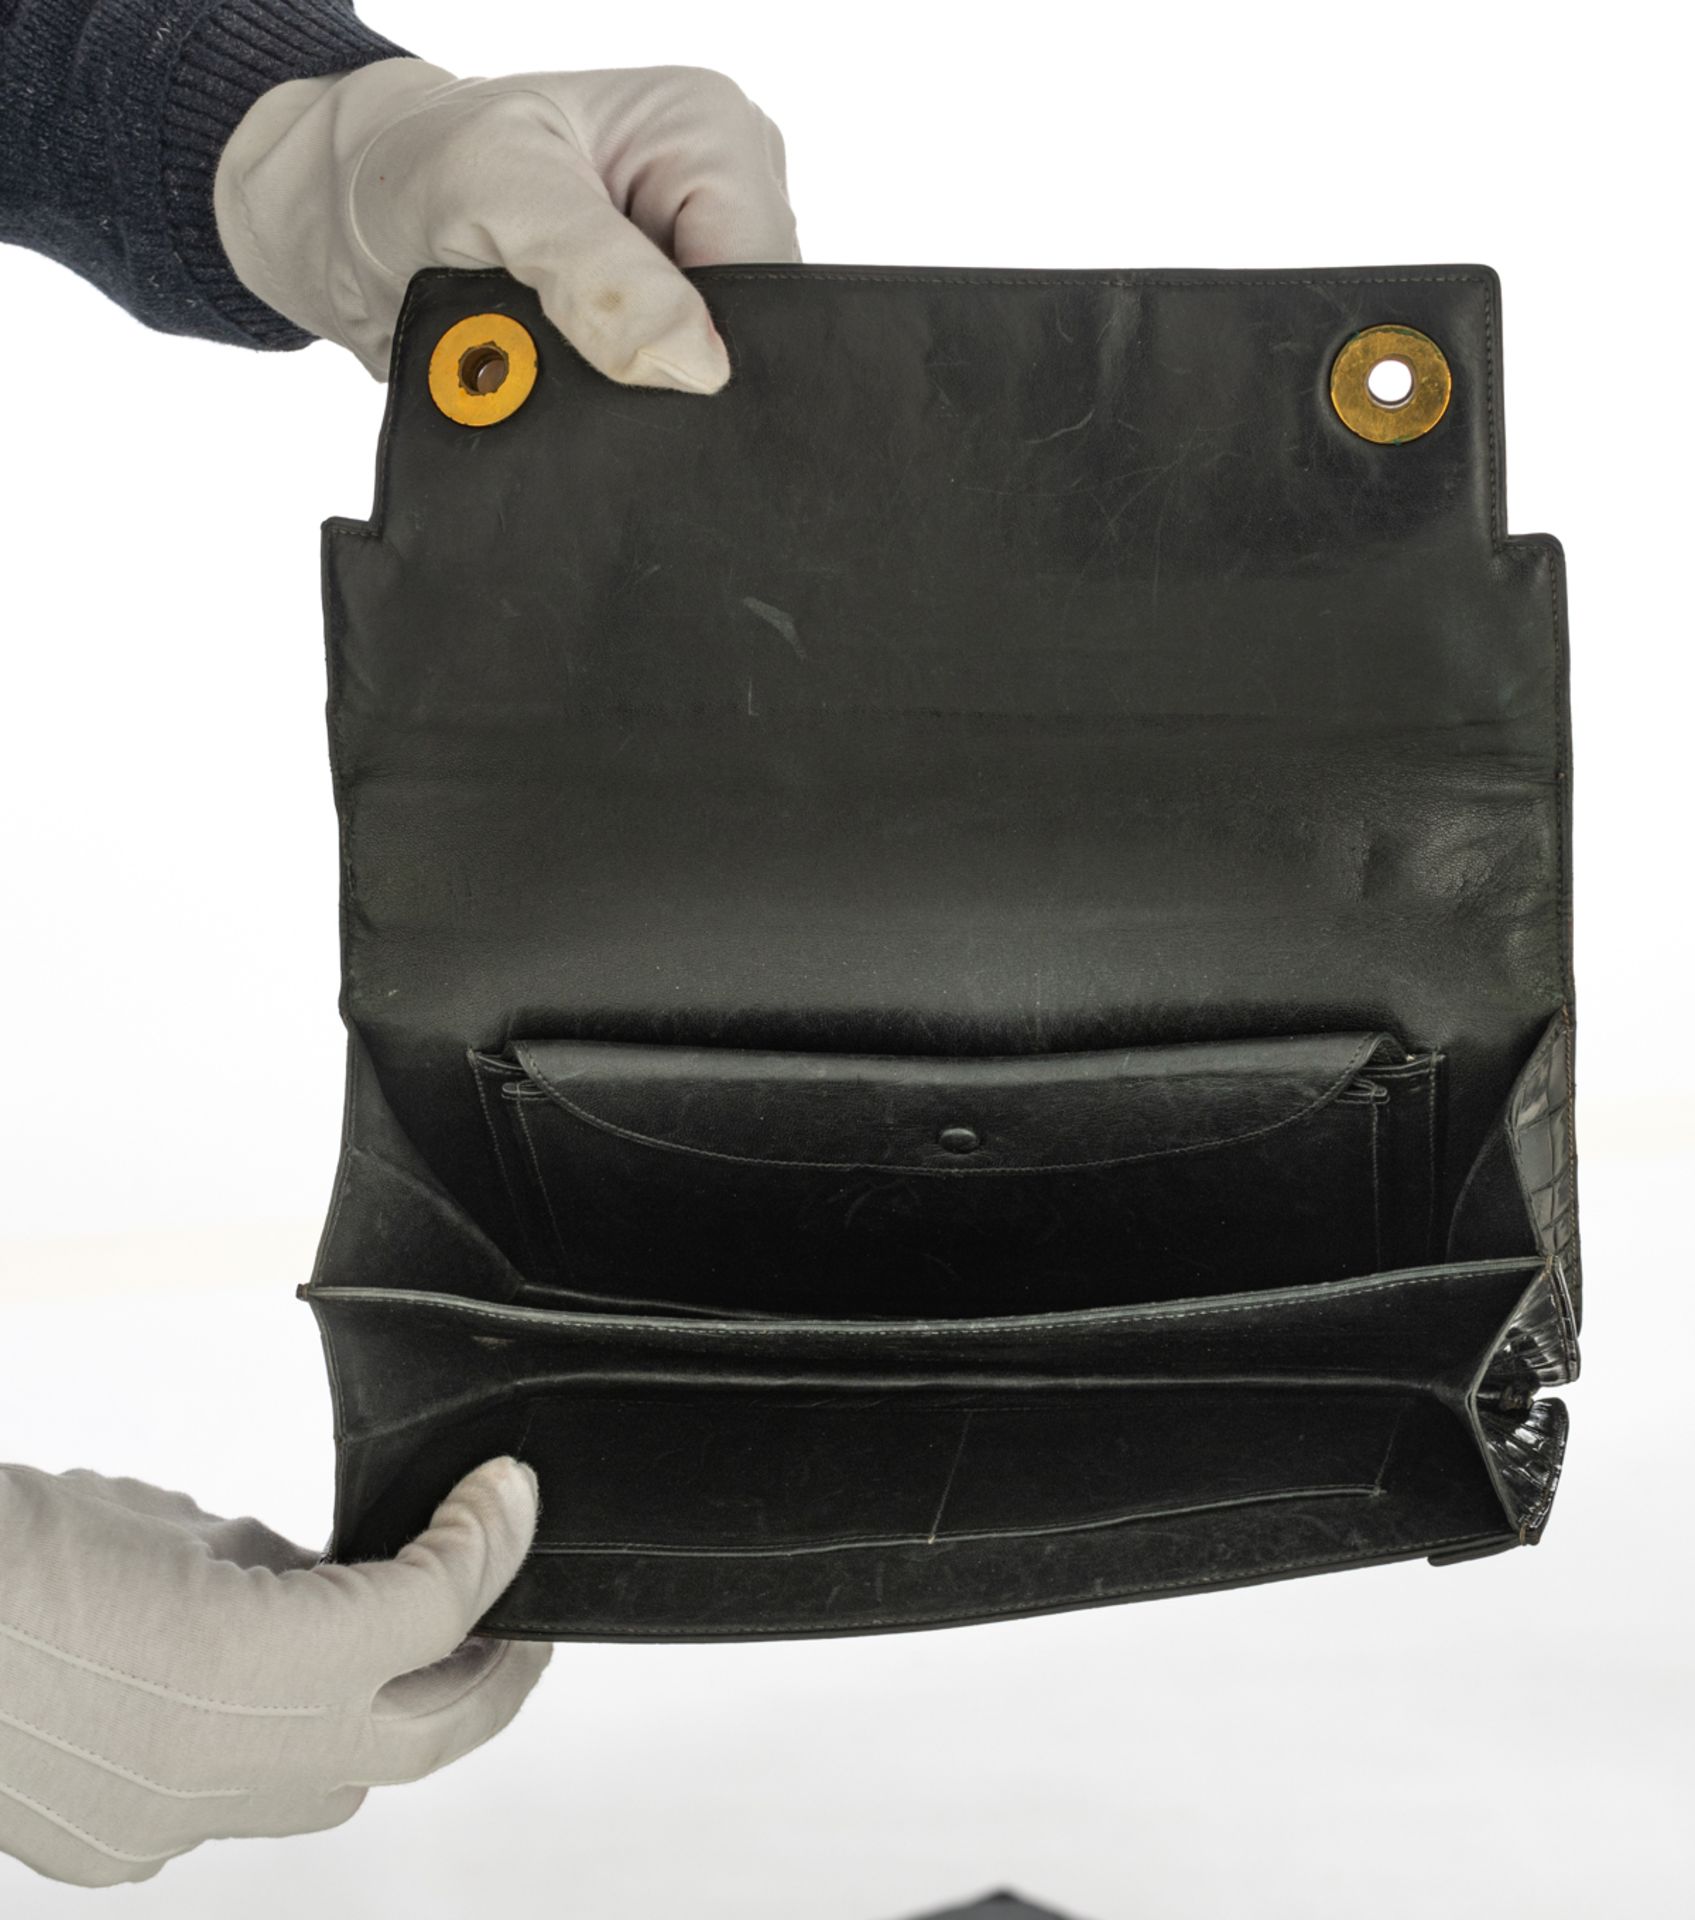 A Hermès 'Piano' handbag in black croco leather, H 14,5 x 27 cm - Image 7 of 8